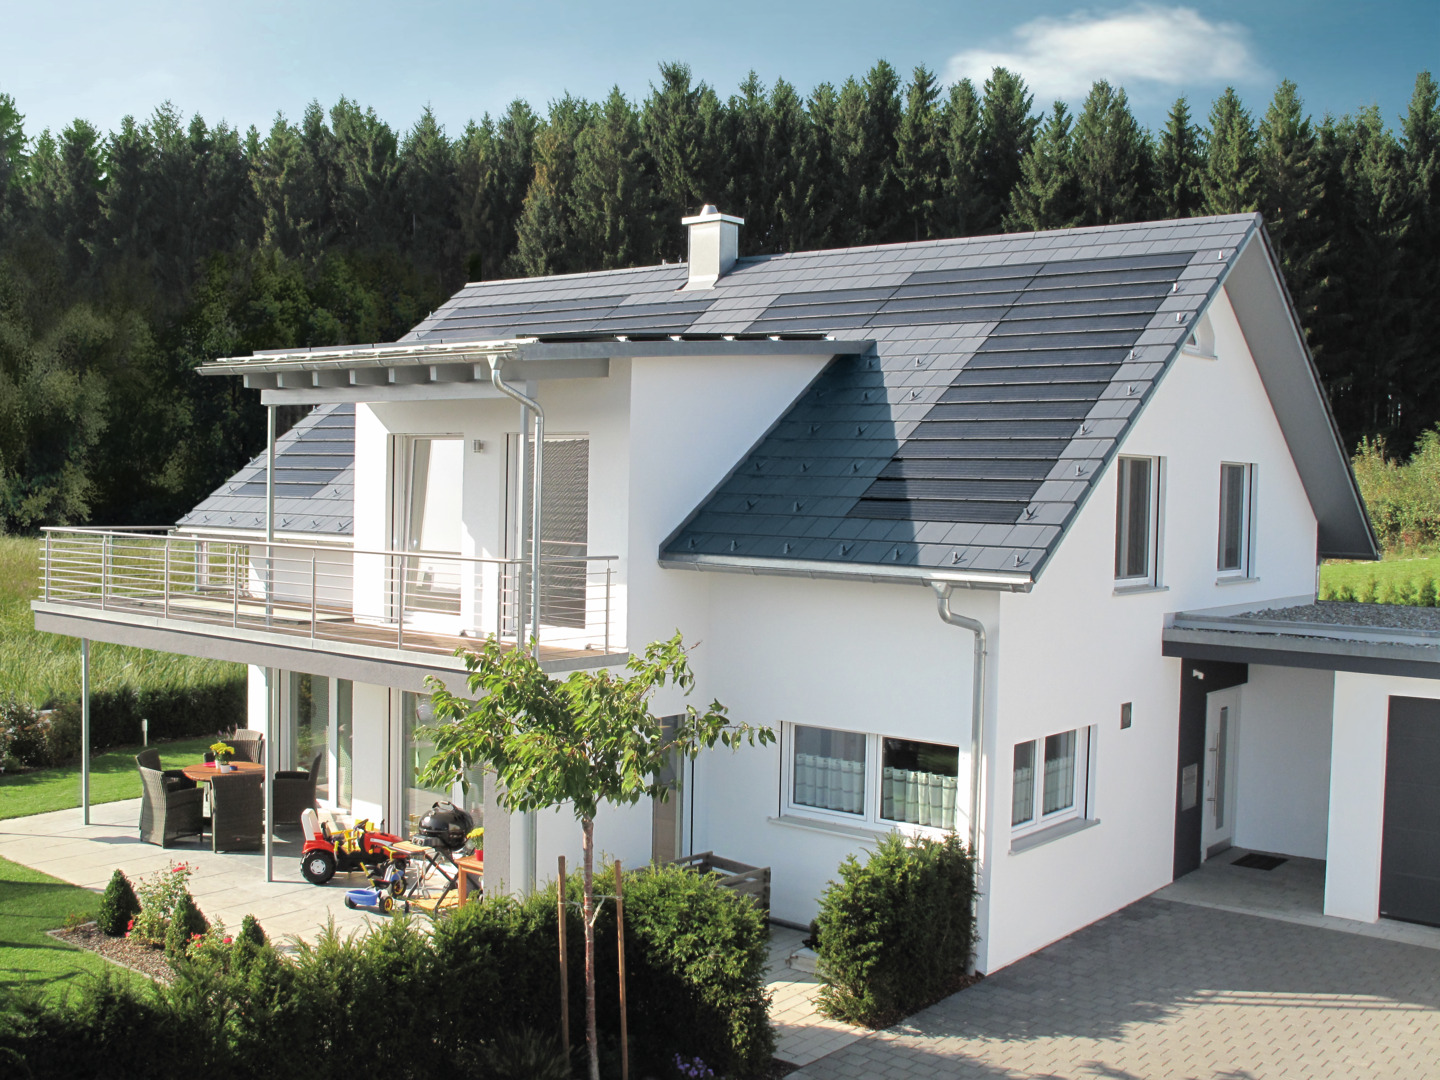 Solardachziegel: Photovoltaik-Indach-System PV Premium von Braas, hier in Kombination mit dem Dachpfannenmodell Tegalit.